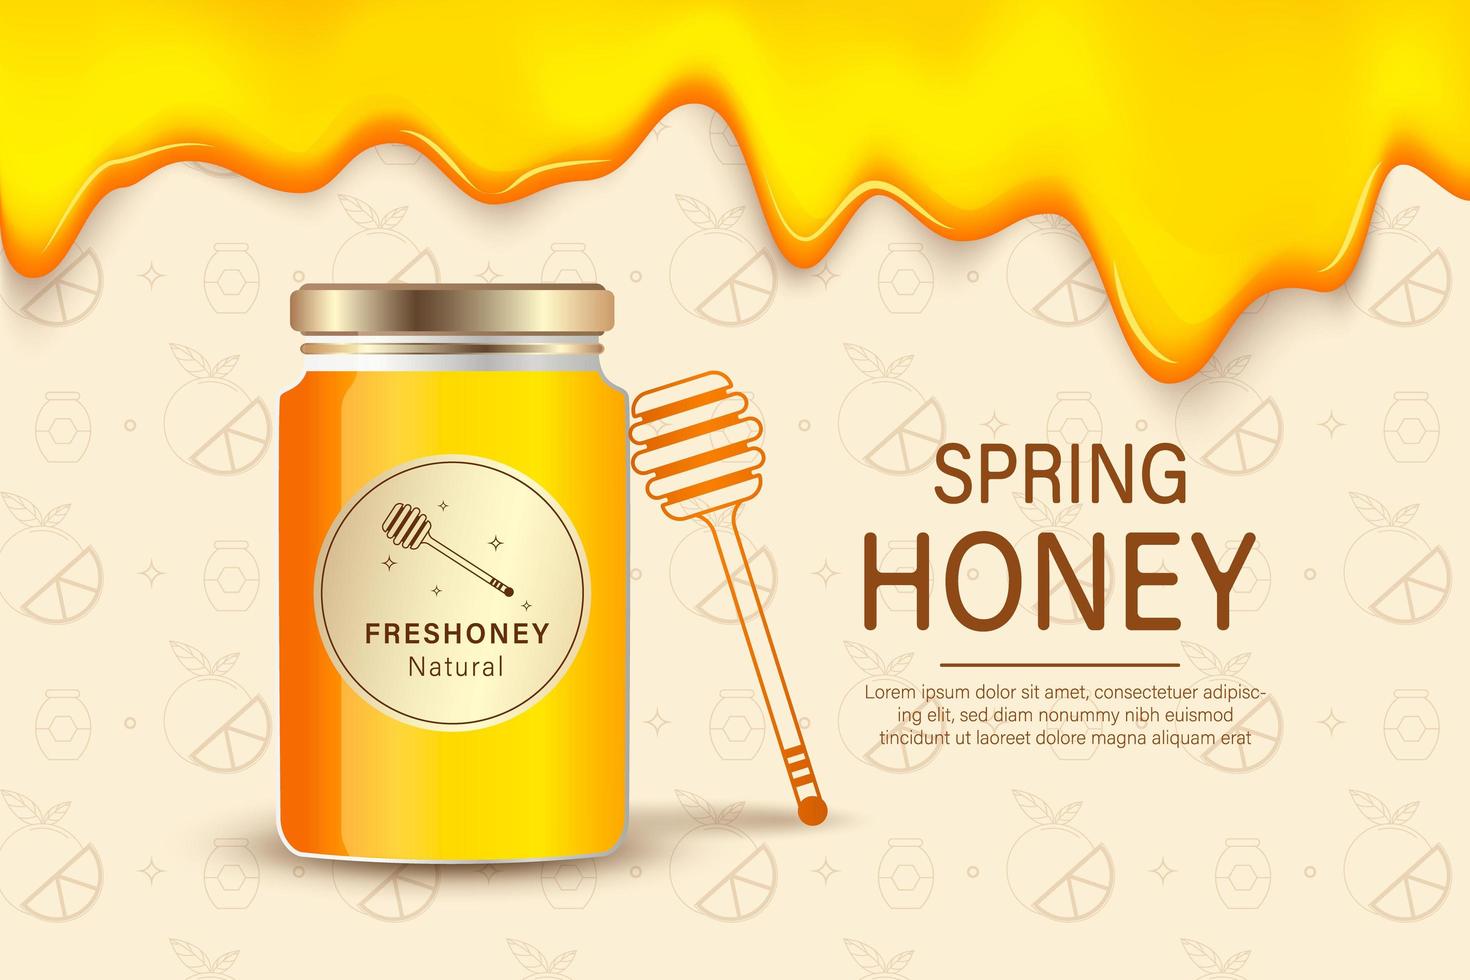 Miel de granja. Plantilla de cartel publicitario con miel realista, fondo de empaquetado de productos agrícolas de alimentos orgánicos saludables. miel de granja, comida dulce orgánica, apicultura natural ilustración vector